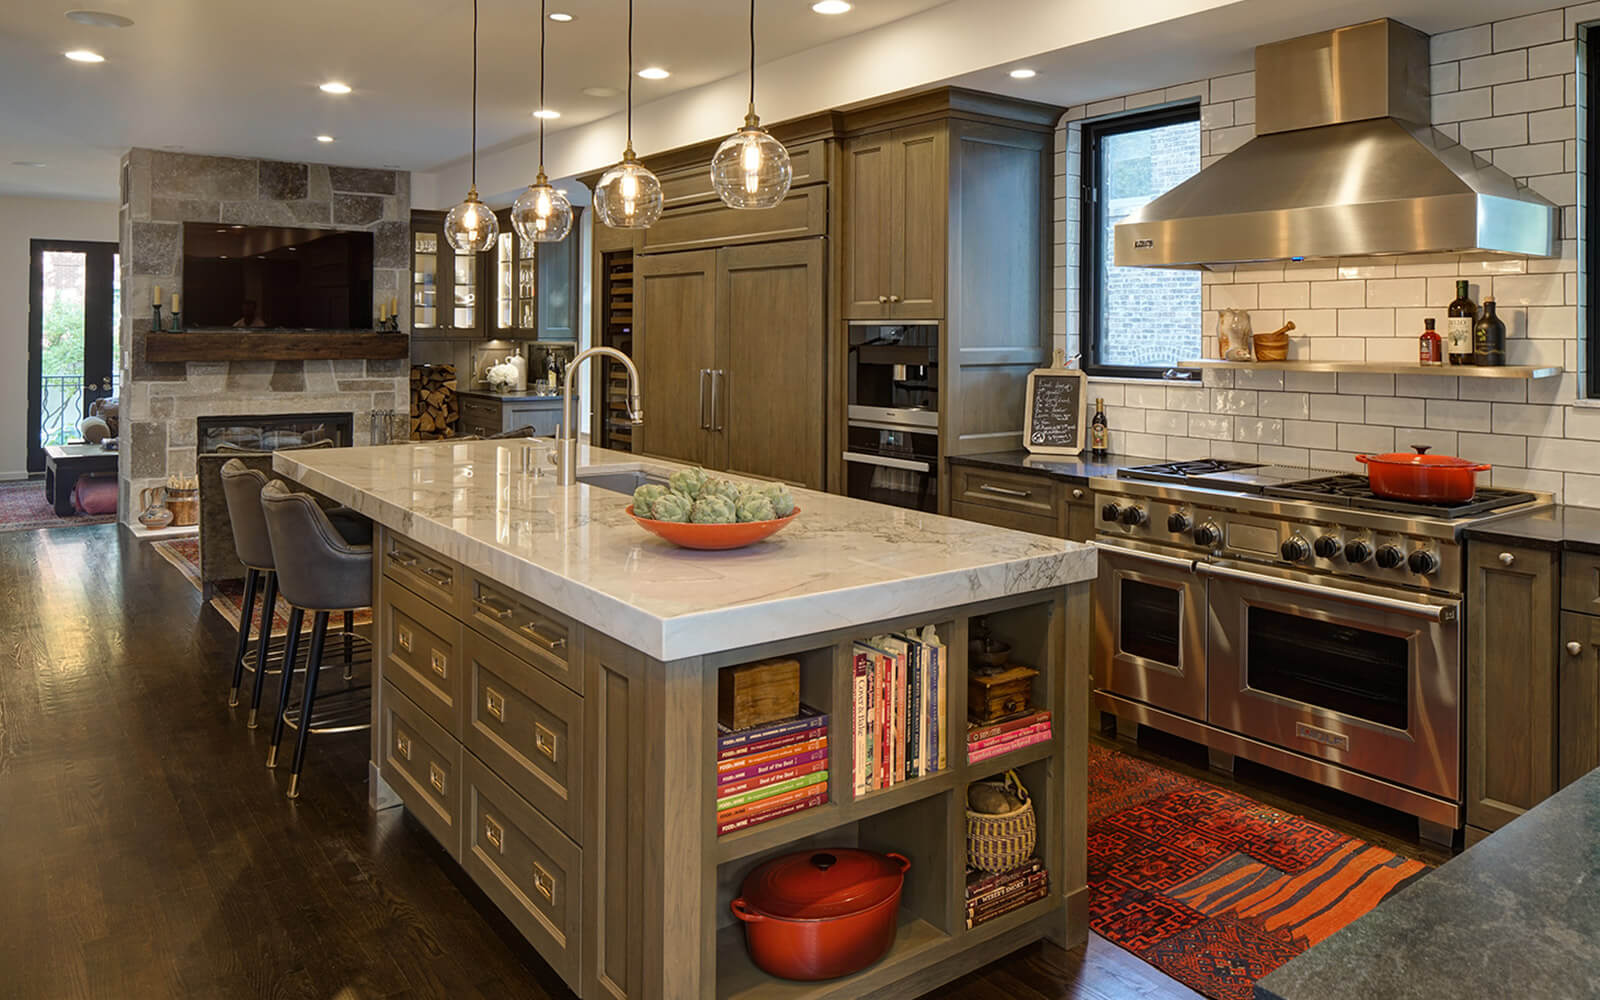 Chicago Brownstone Kitchen featuring an open floor design